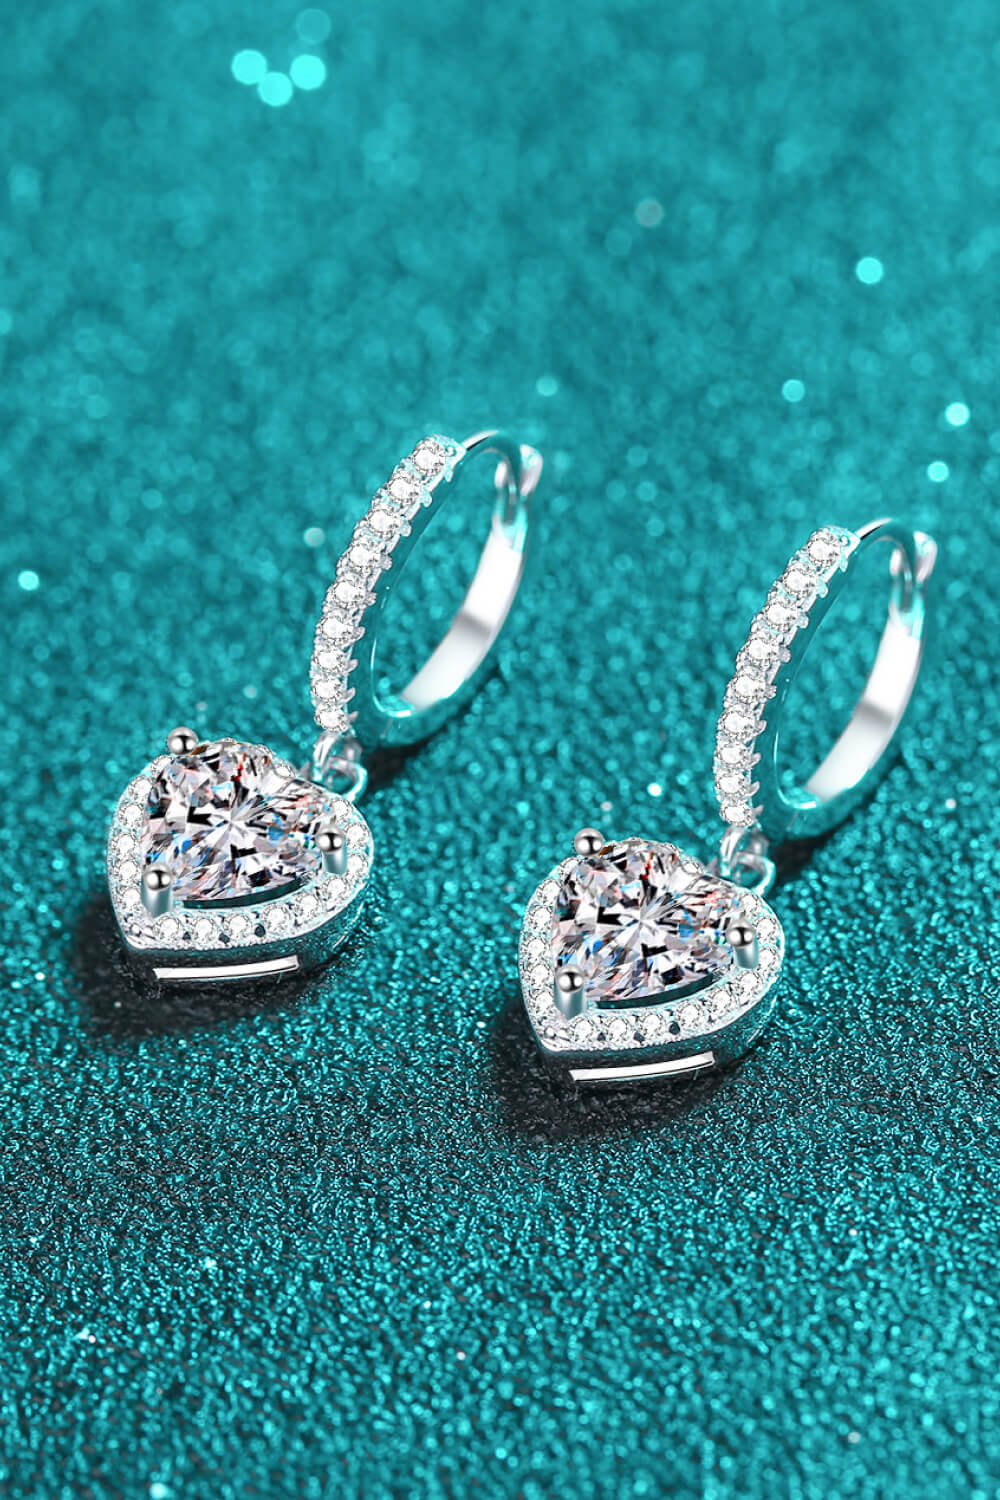 Heart Earrings Moissanite Heart-Shaped Drop Earrings Women's Jewelry